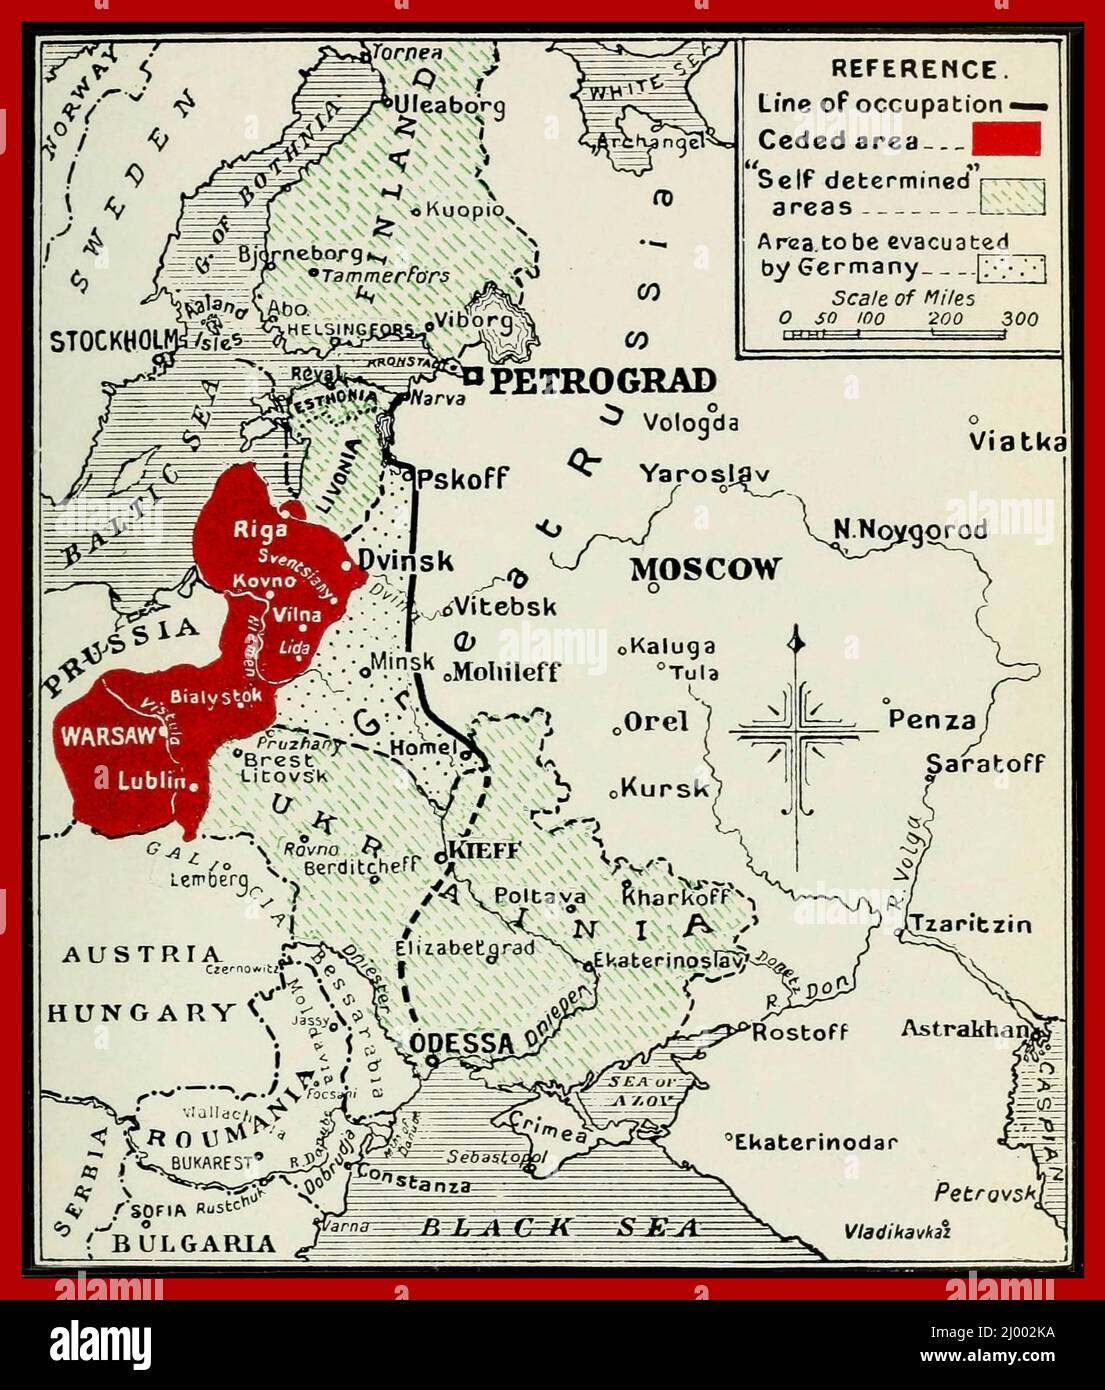 Mapa Vintage 1918 Ucrania Rusia El Tratado de Brest-Litovsk (también conocido como el Tratado de Brest en Rusia) fue un tratado de paz separado firmado el 3 de marzo de 1918, entre el nuevo gobierno bolchevique de Rusia y las Potencias centrales (Imperio Alemán, Austria-Hungría, Bulgaria, y el Imperio Otomano), Esto puso fin a la participación de Rusia en la Guerra Mundial I. El tratado fue firmado en Brest-Litovsk (polaco: Brześć Litewski; desde 1945, Brest, ahora en la Bielorrusia moderna), después de dos meses de negociaciones. El tratado fue acordado por los rusos para detener una nueva invasión. Foto de stock